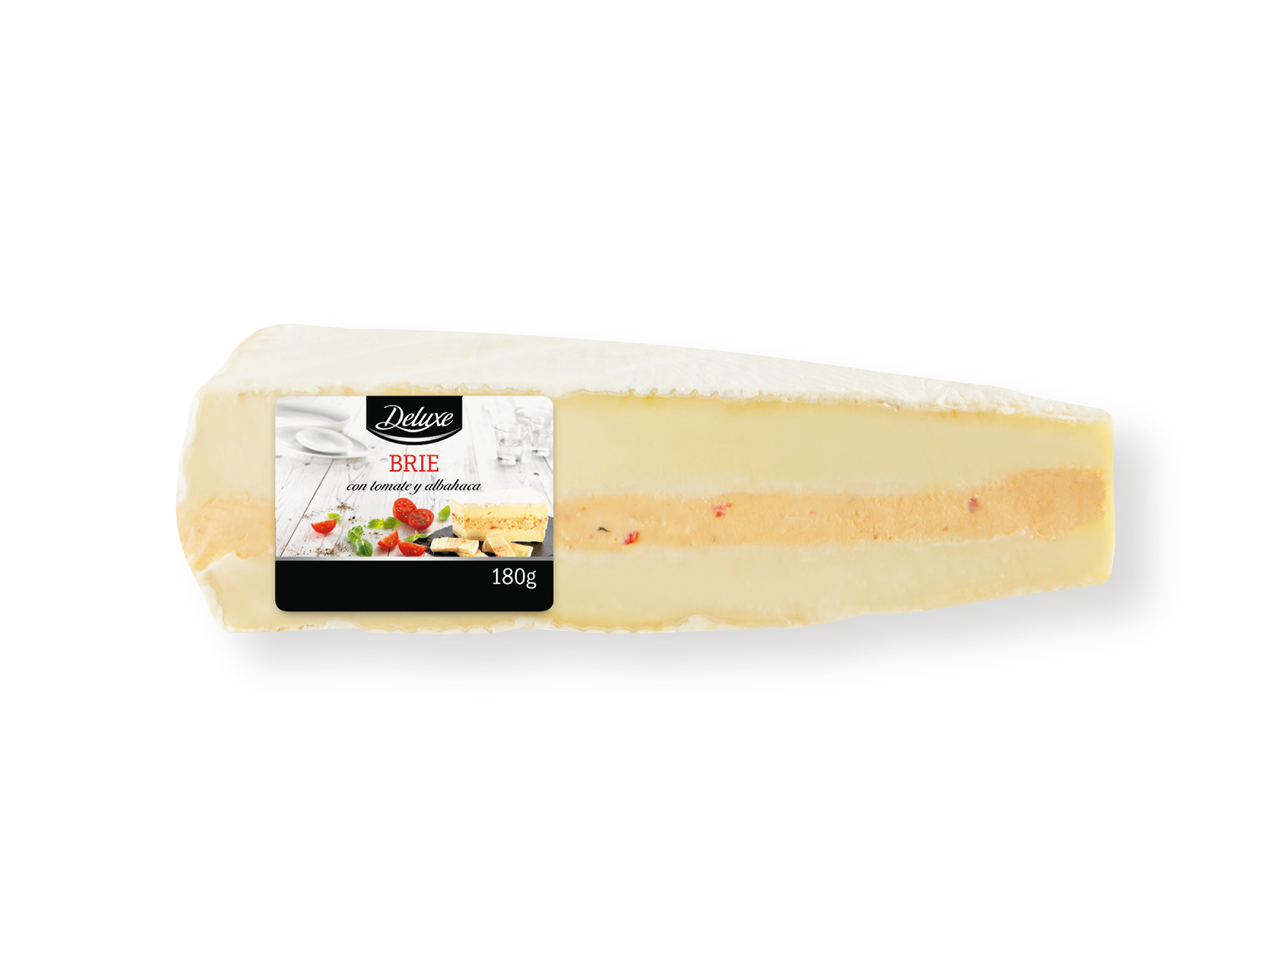 'Deluxe(R)' Queso Brie relleno